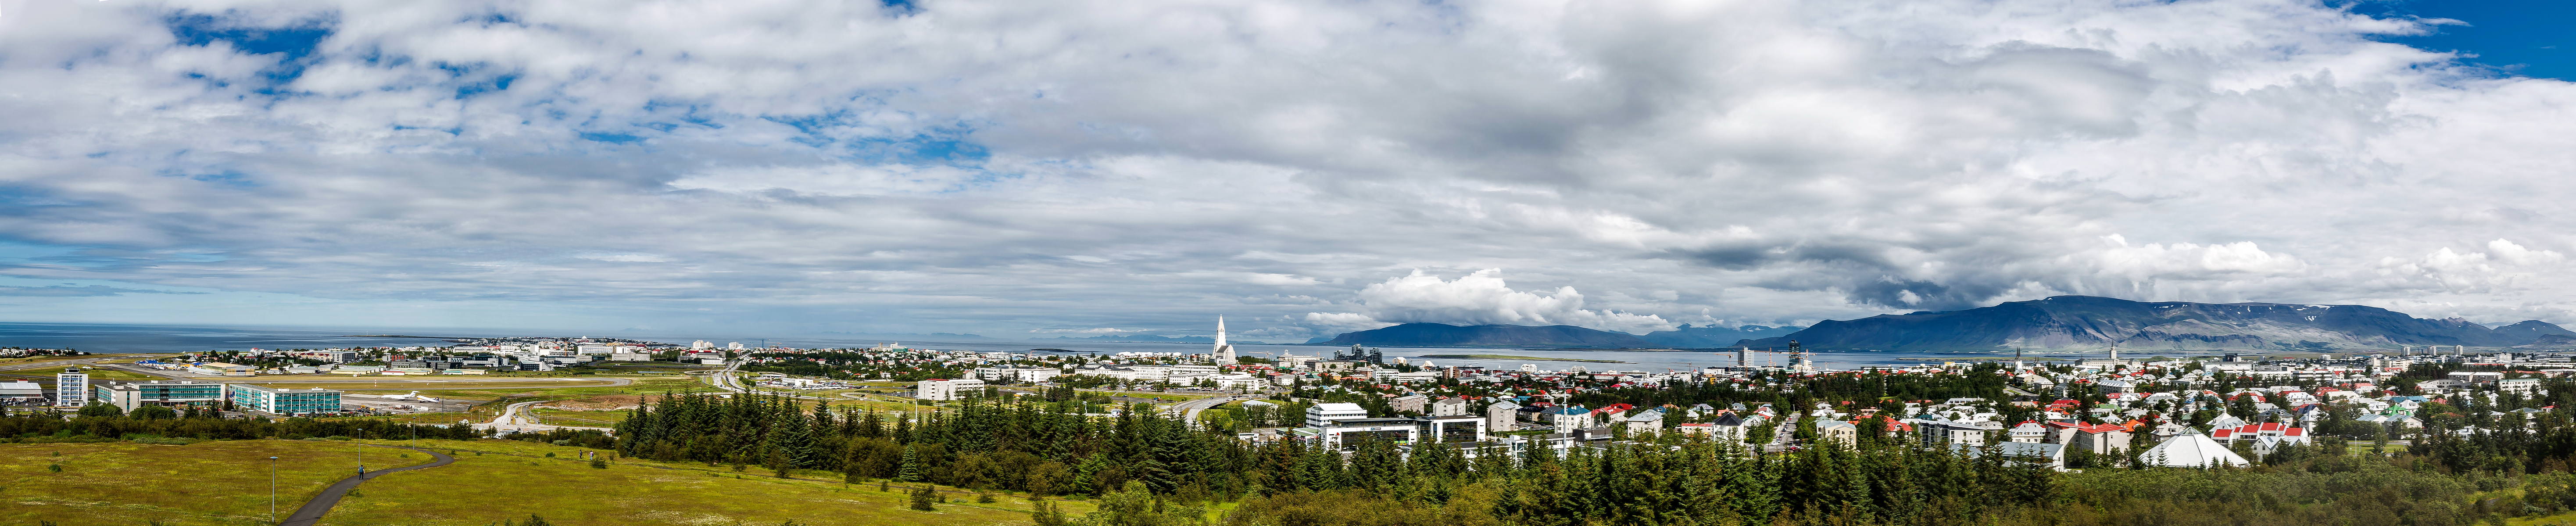 Iceland 07-2016 Reykjavik